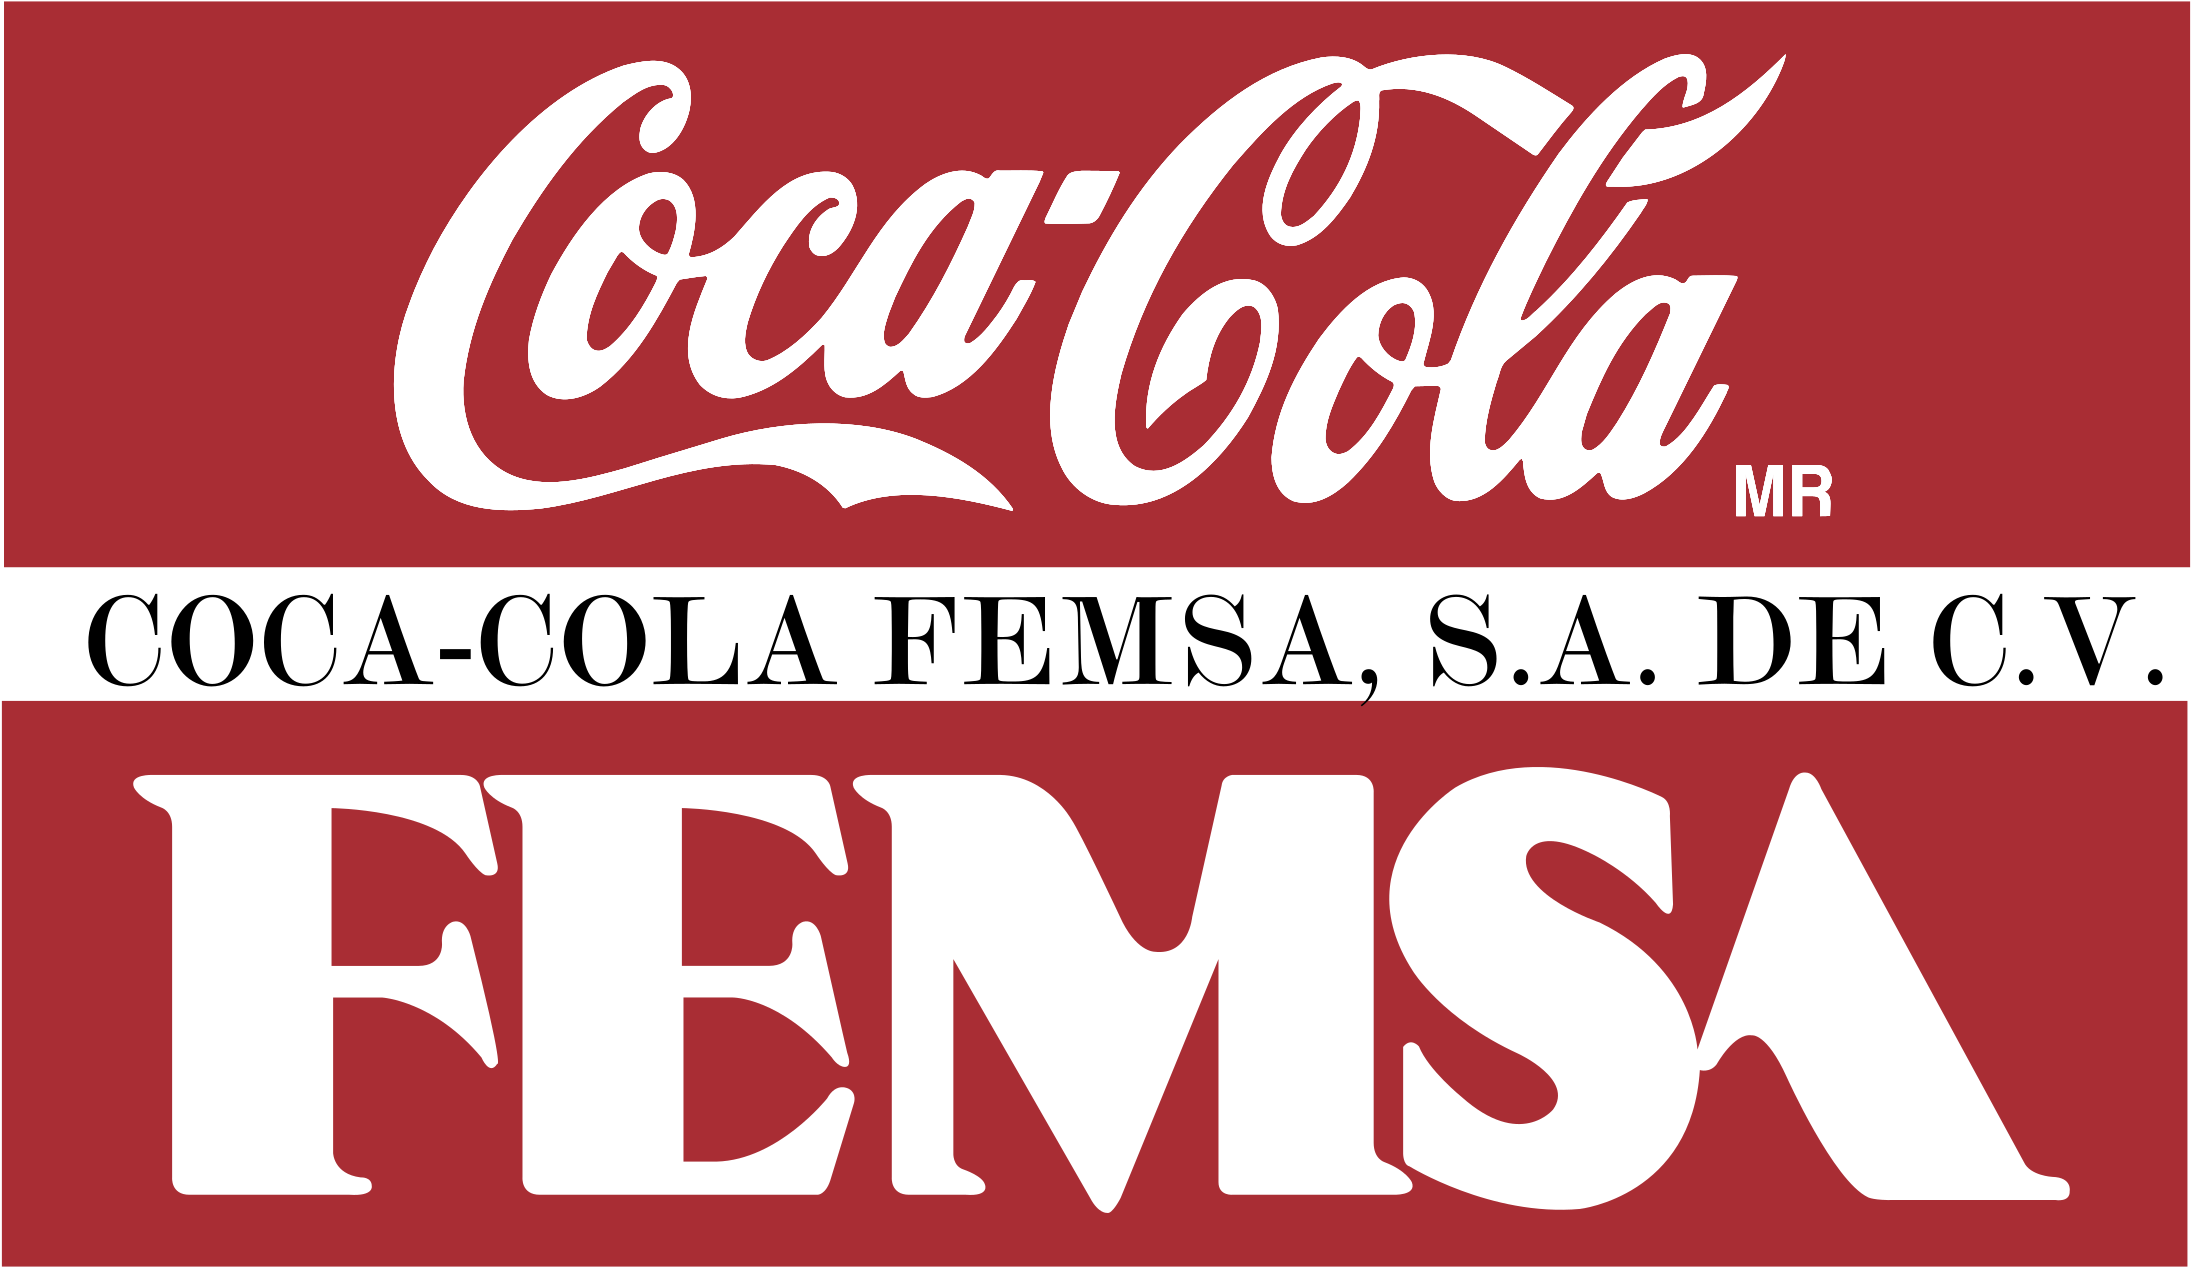 Coca Cola Femsa Logo Png Transparent - Coca Cola Femsa Vector (2400x2400), Png Download